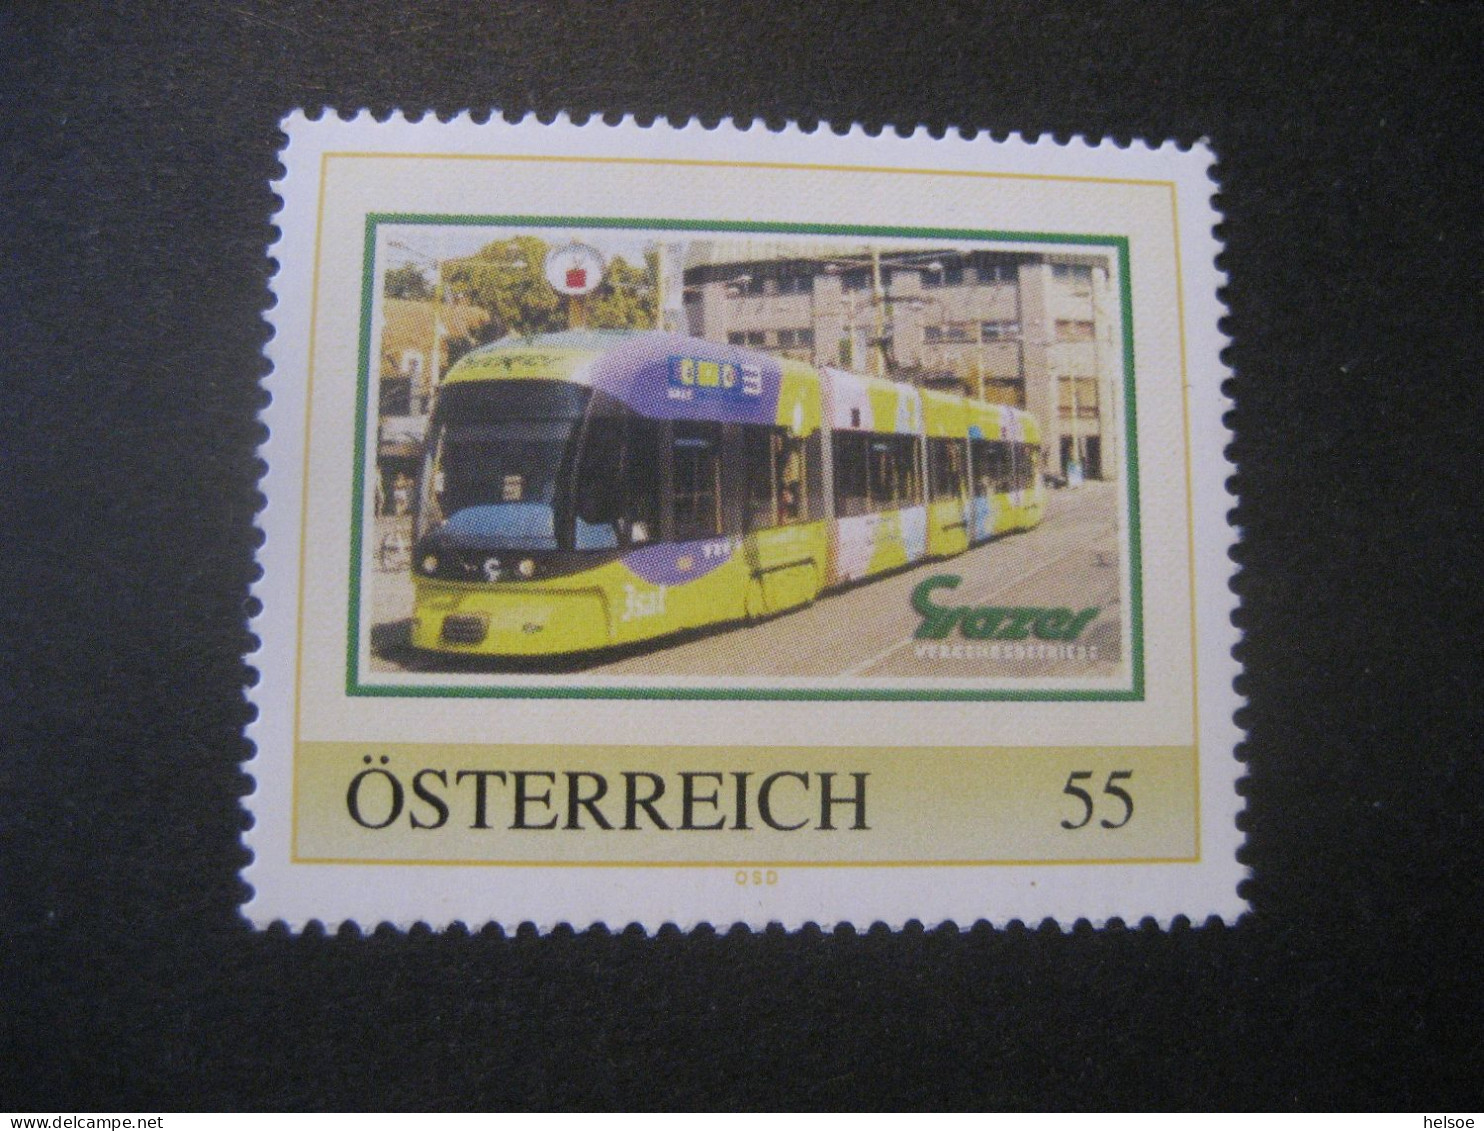 Österreich- PM Grazer Verkehrsbetriebe Ungebraucht - Personnalized Stamps